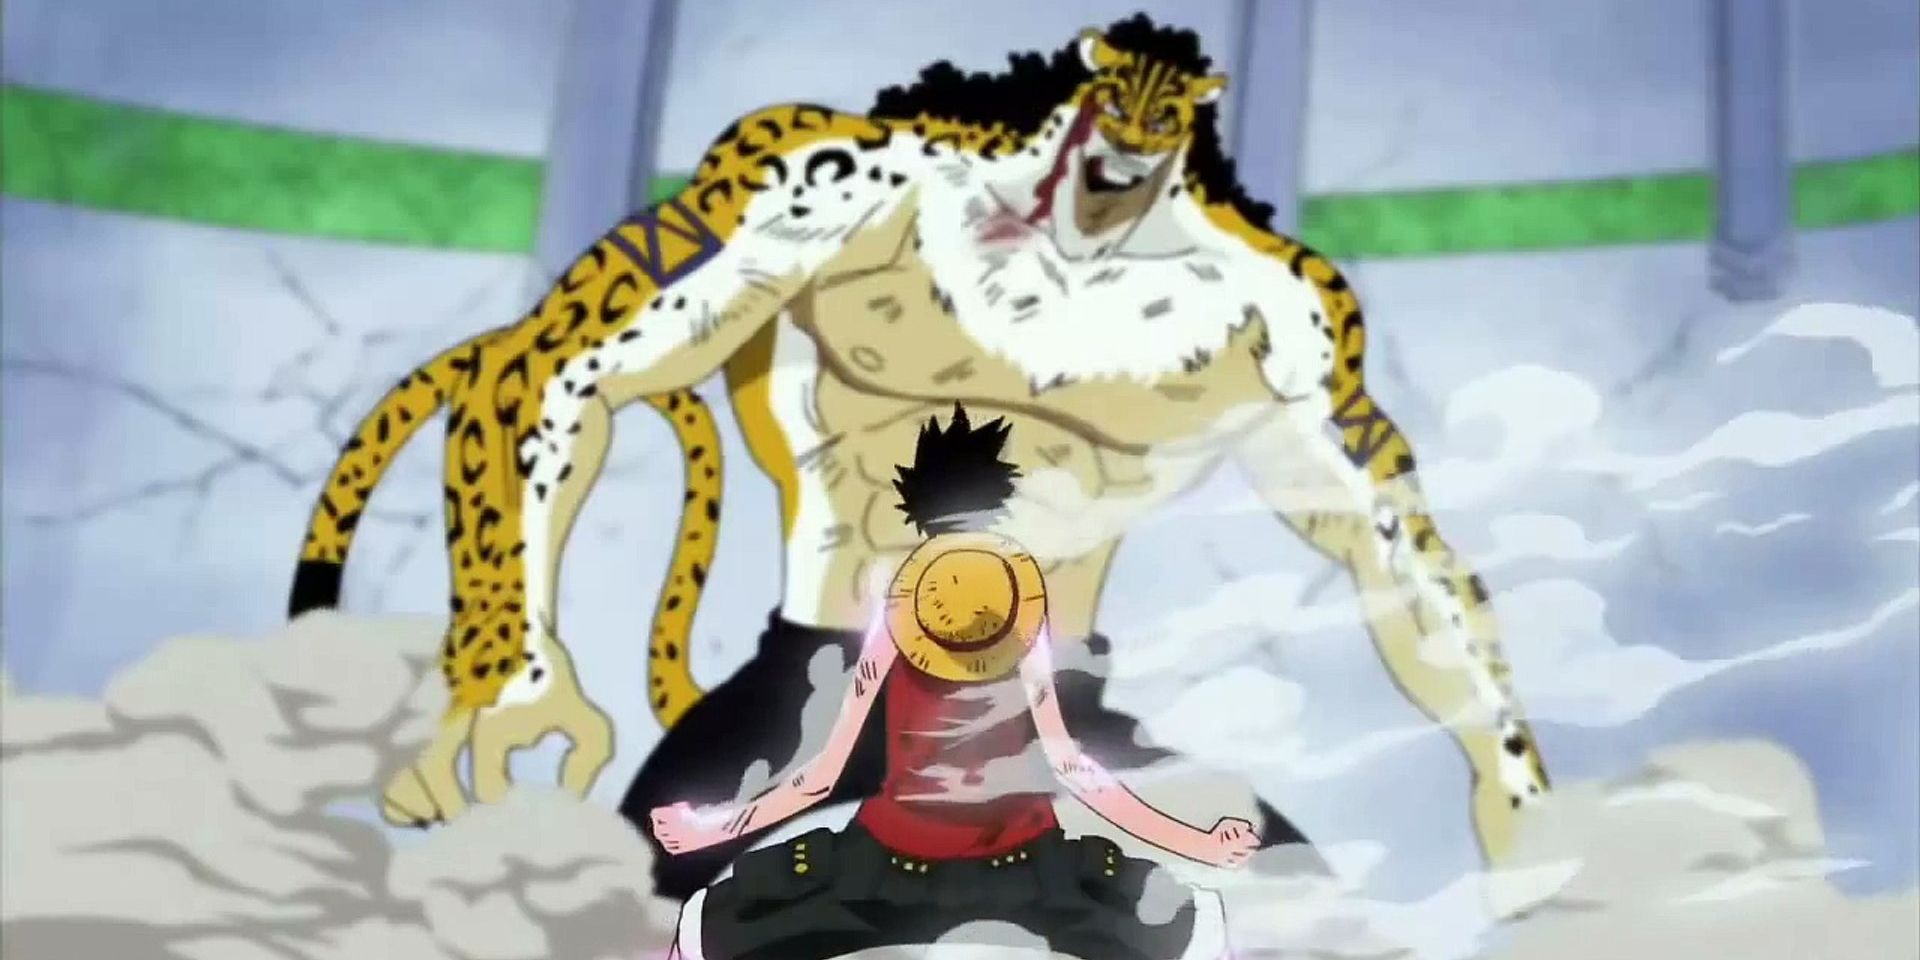 One Piece Luffy Versus Lucci